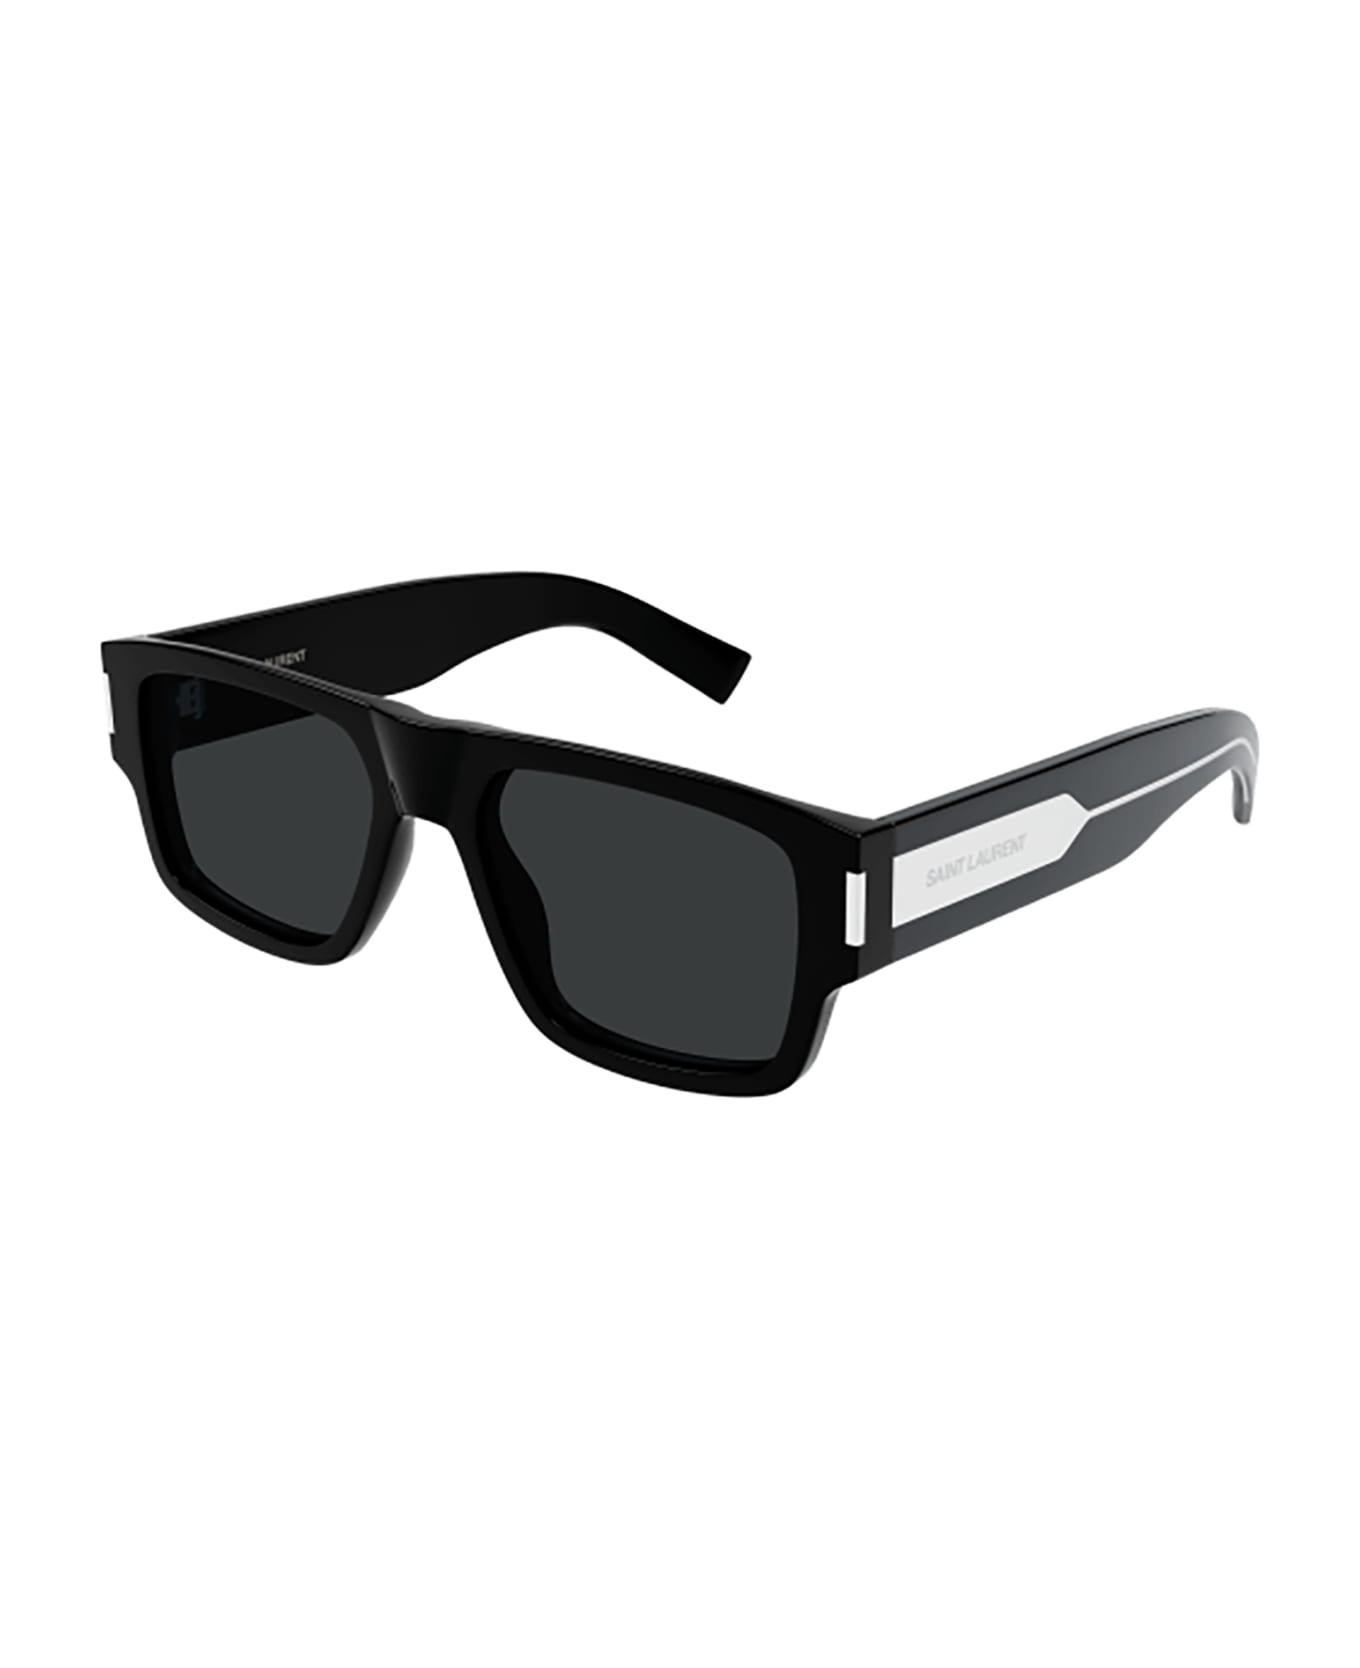 Saint Laurent Eyewear SL 659 Sunglasses - Black Crystal Black